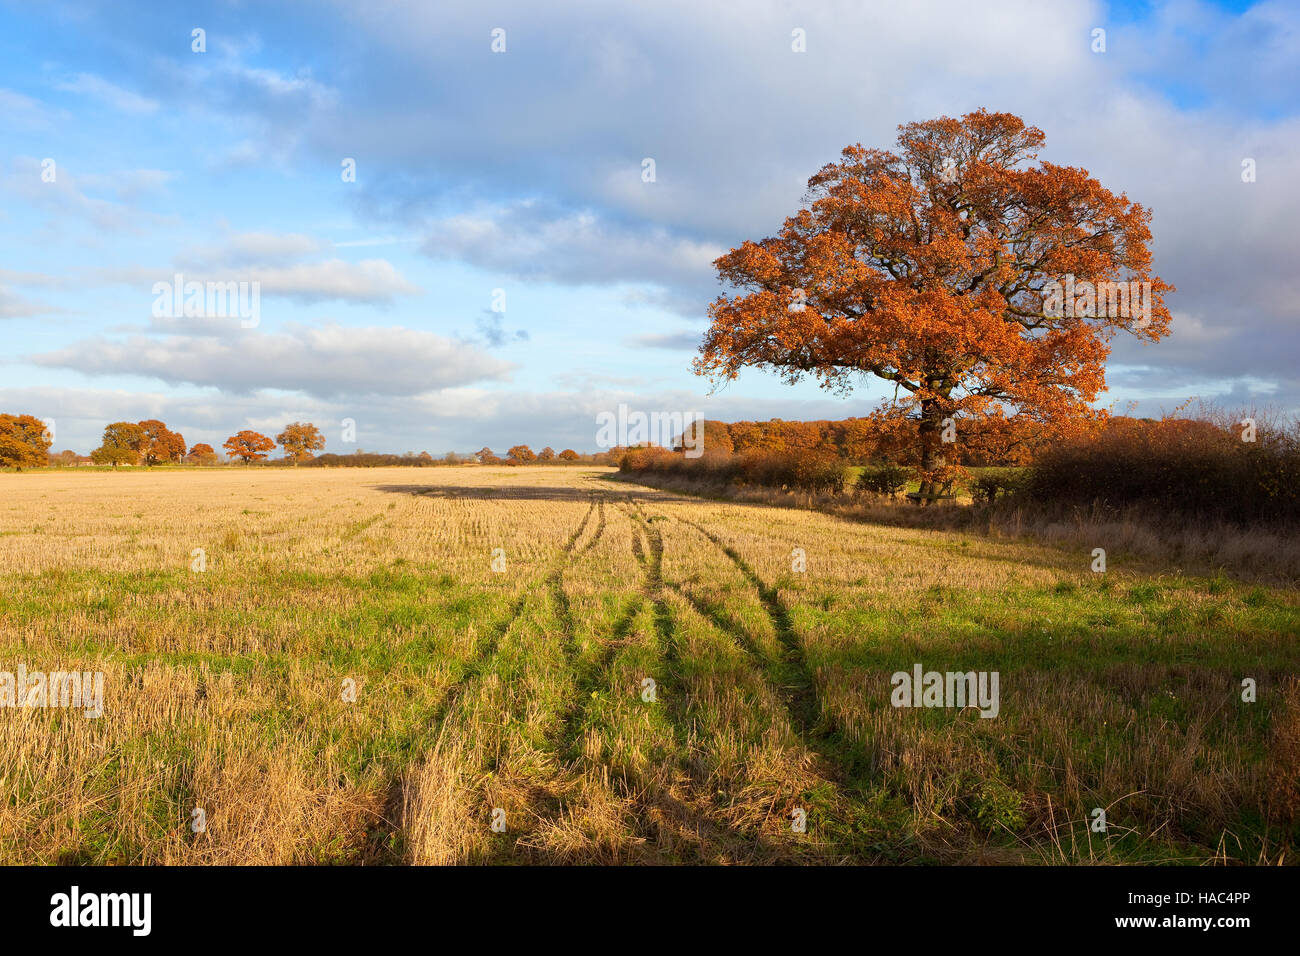 Paesaggio inglese con un albero di quercia con arancio brillante fogliame di autunno da malerbe campo di stoppie. Foto Stock